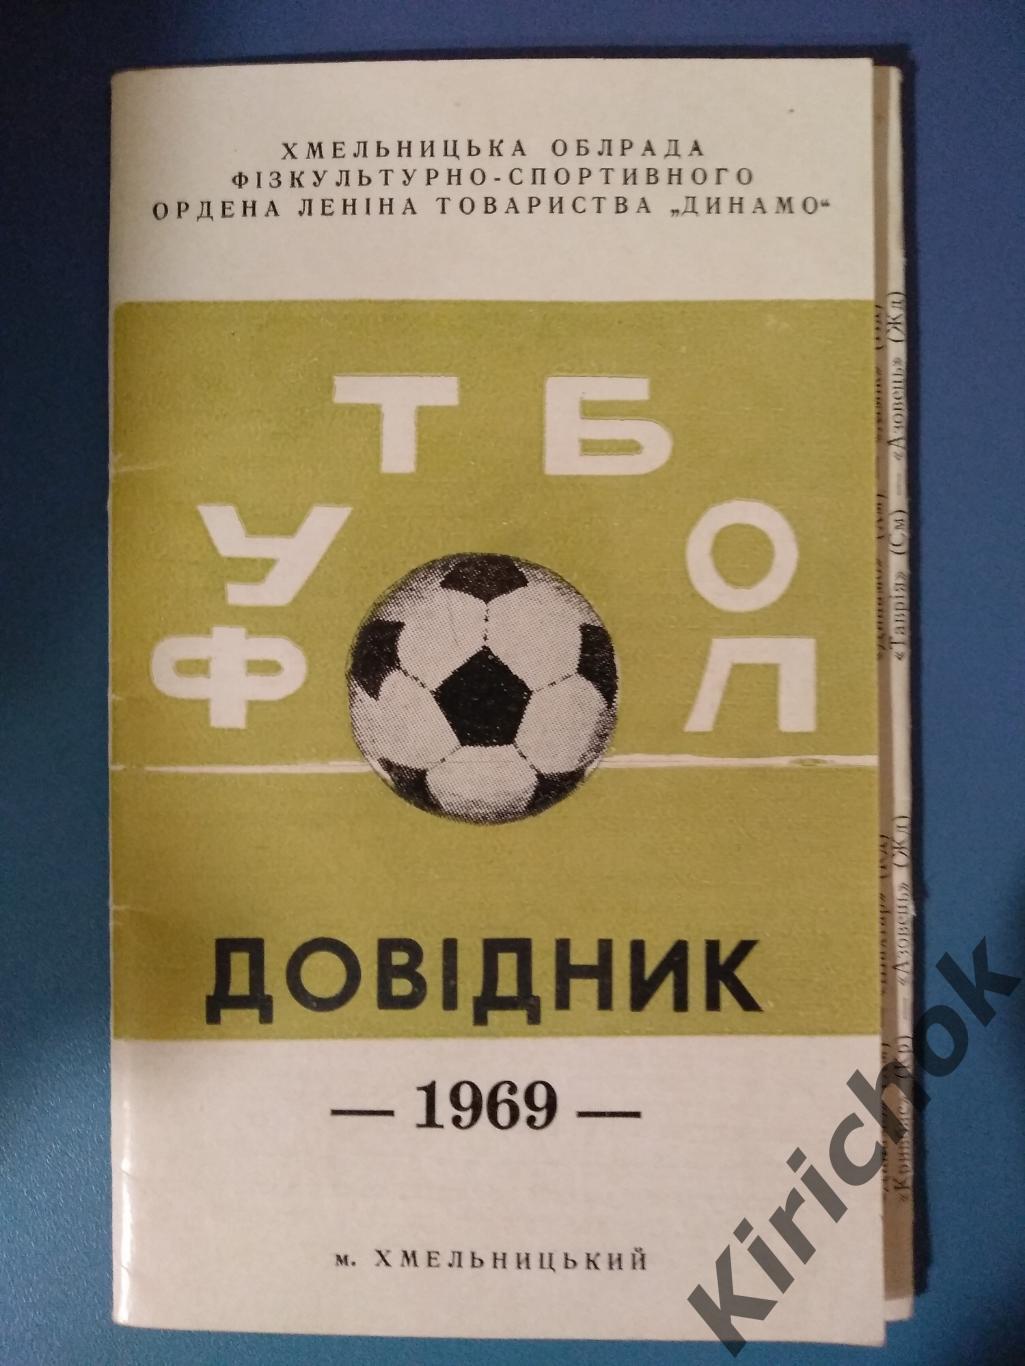 Календарь - справочник: Хмельницкий 1969